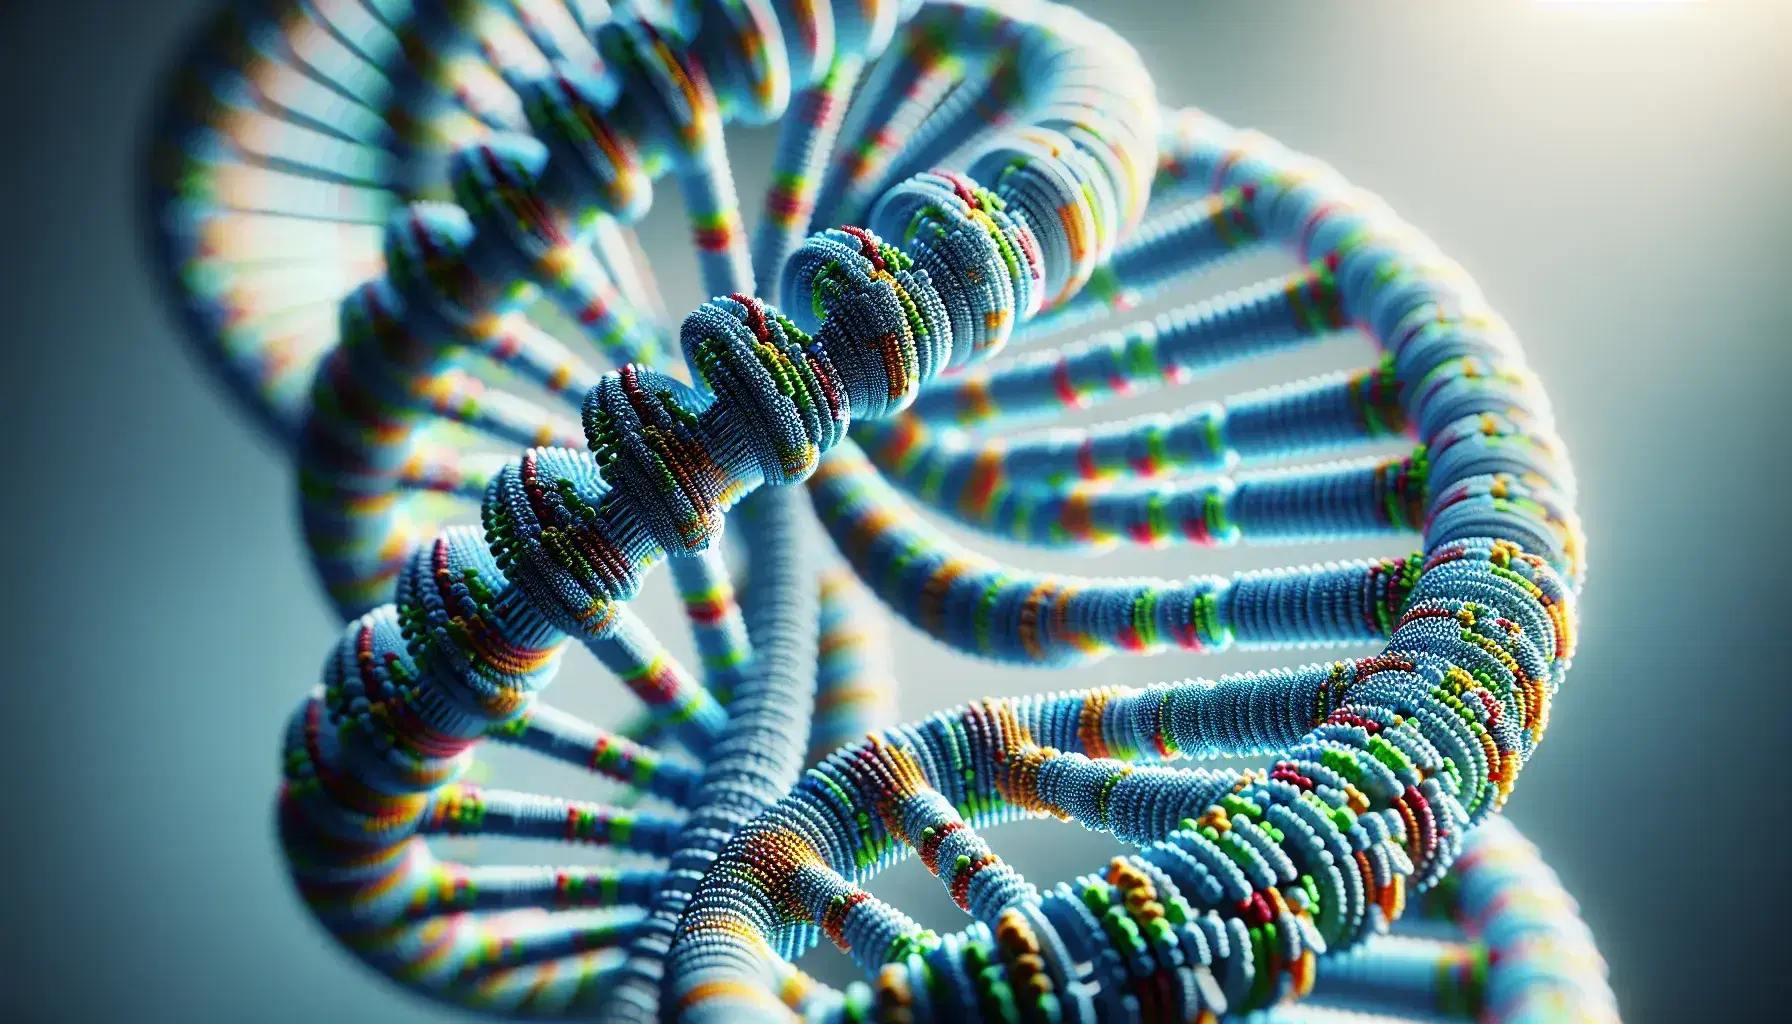 Estructura detallada de una doble hélice de ADN en 3D con espirales de colores y fondo desenfocado que resalta su textura y profundidad.